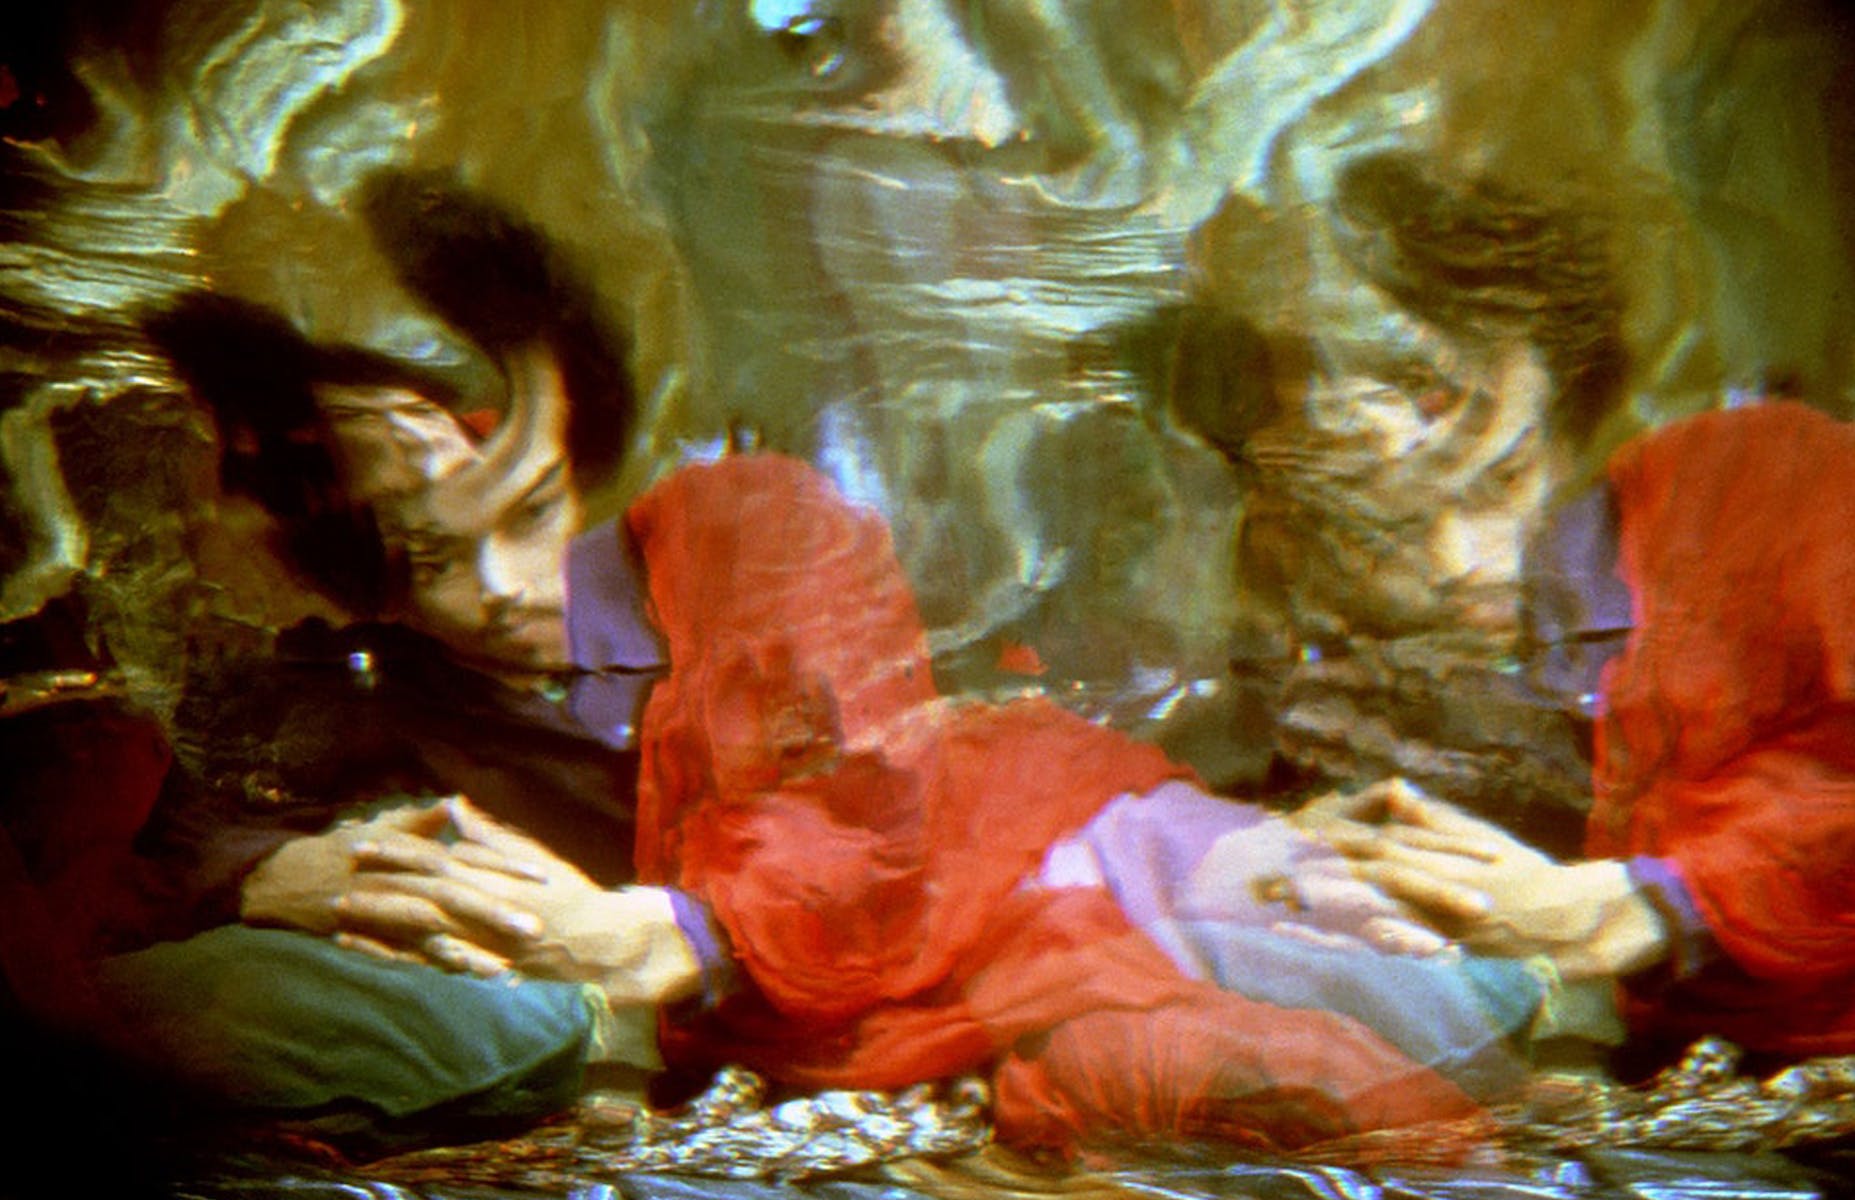 Blurry warped image of man laying down